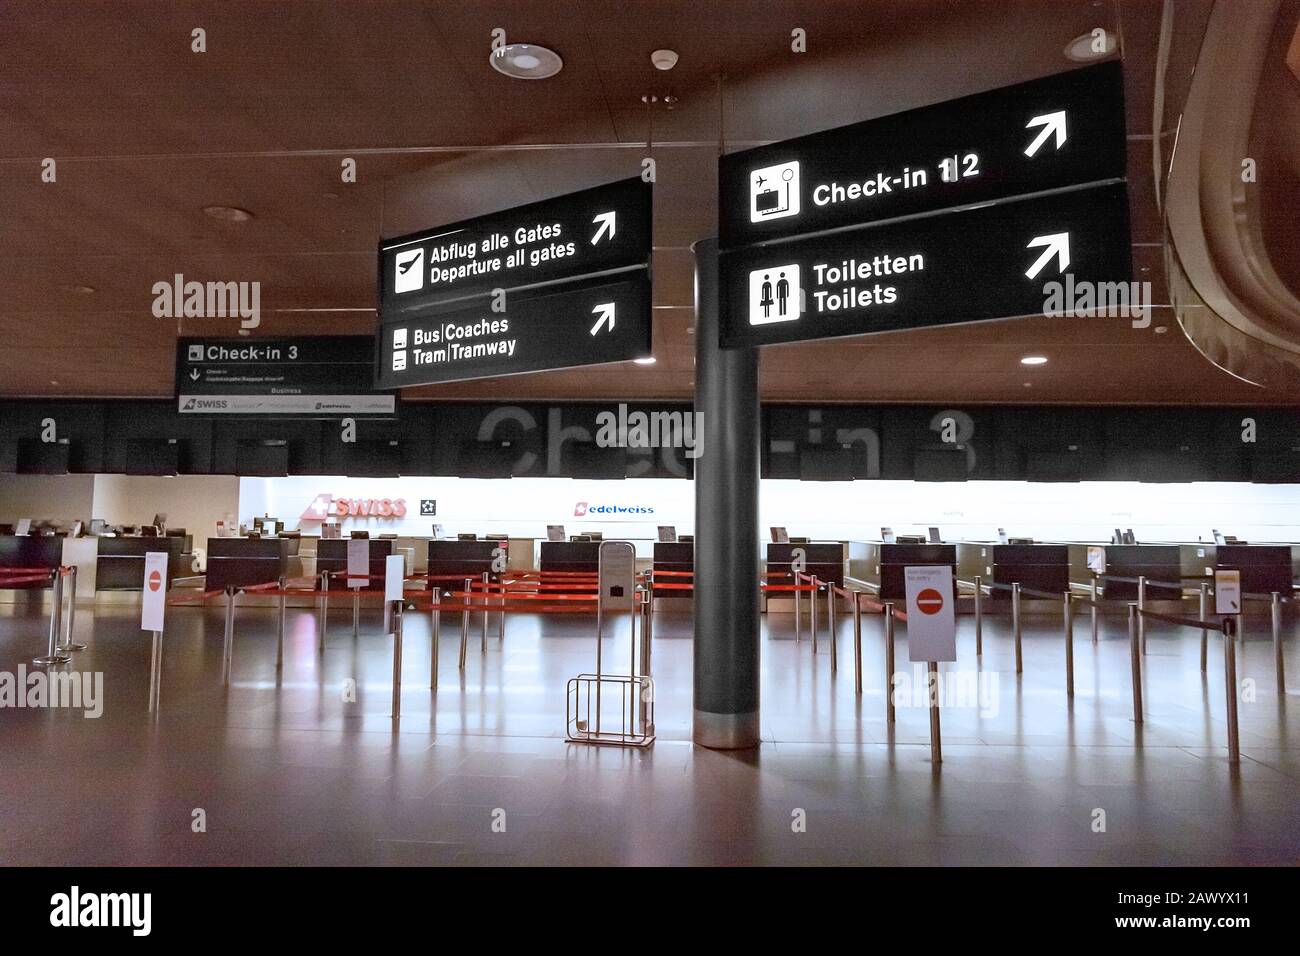 Zurigo, Svizzera - 11 giugno 2017: Aeroporto di Zurigo, banco di check-in 3, segnale per cancelli di partenza, tram, servizi igienici Foto Stock